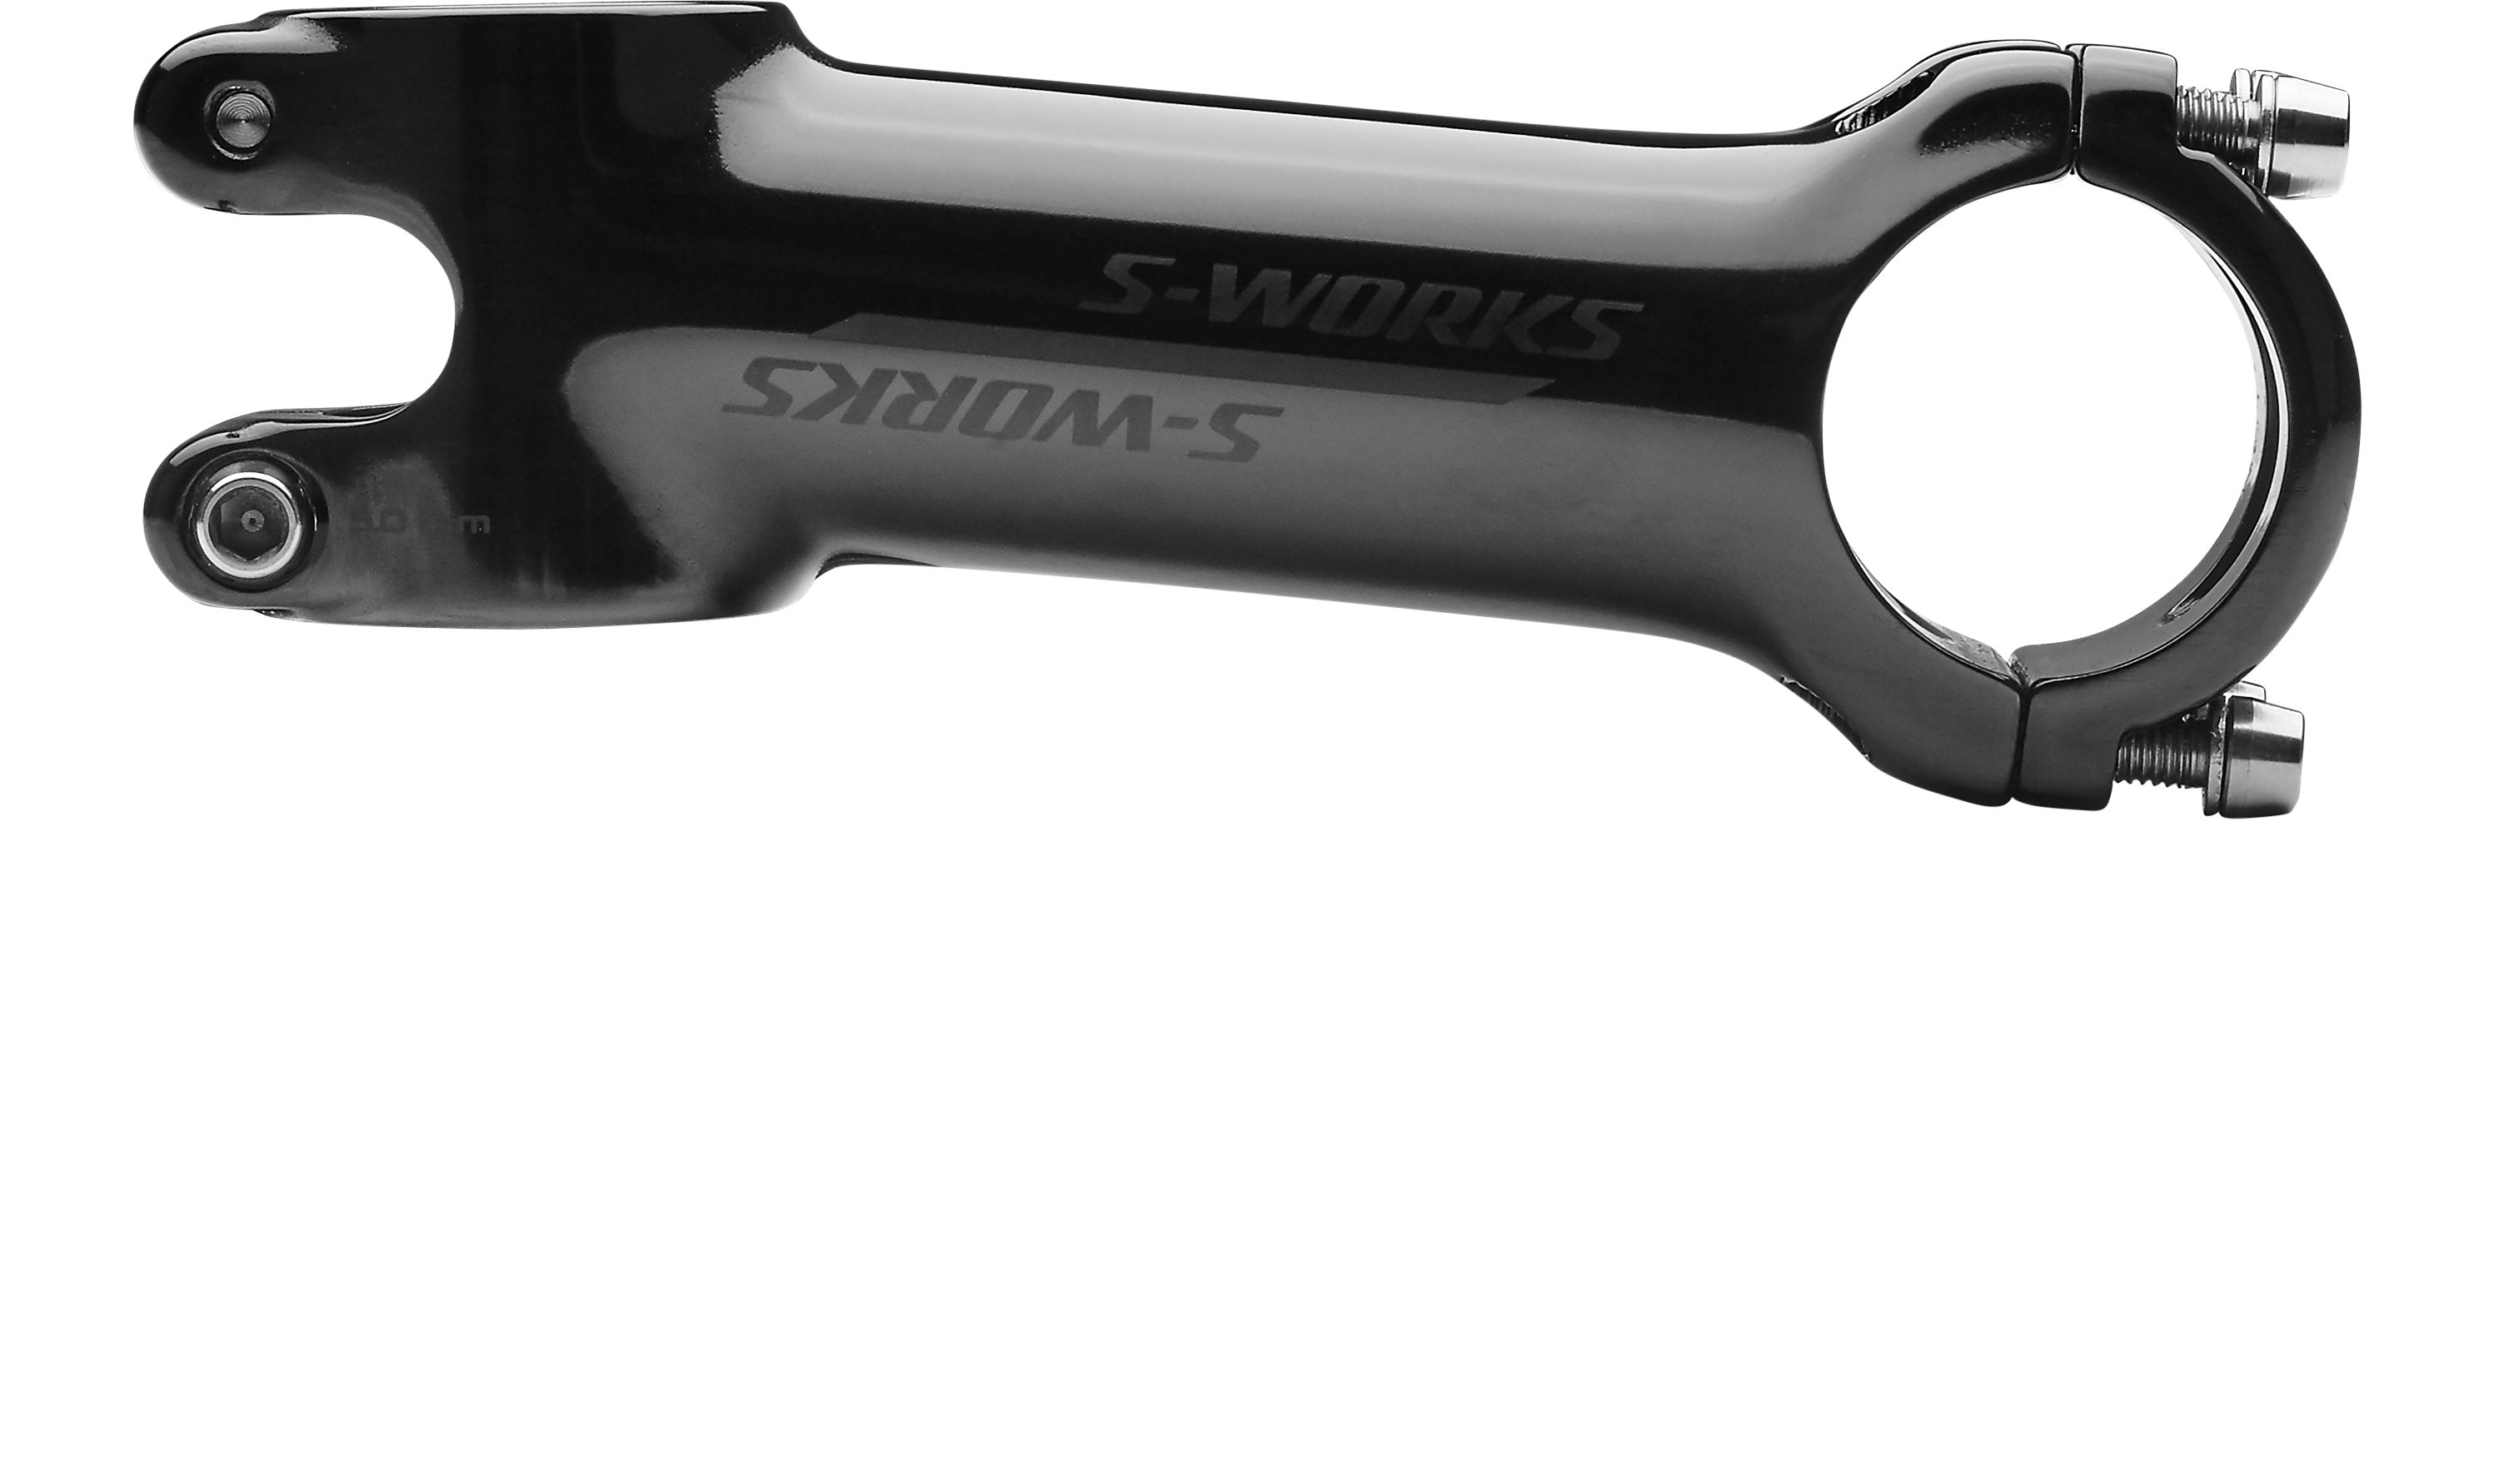 Specialized S-Works SL Stem with Expander Plug